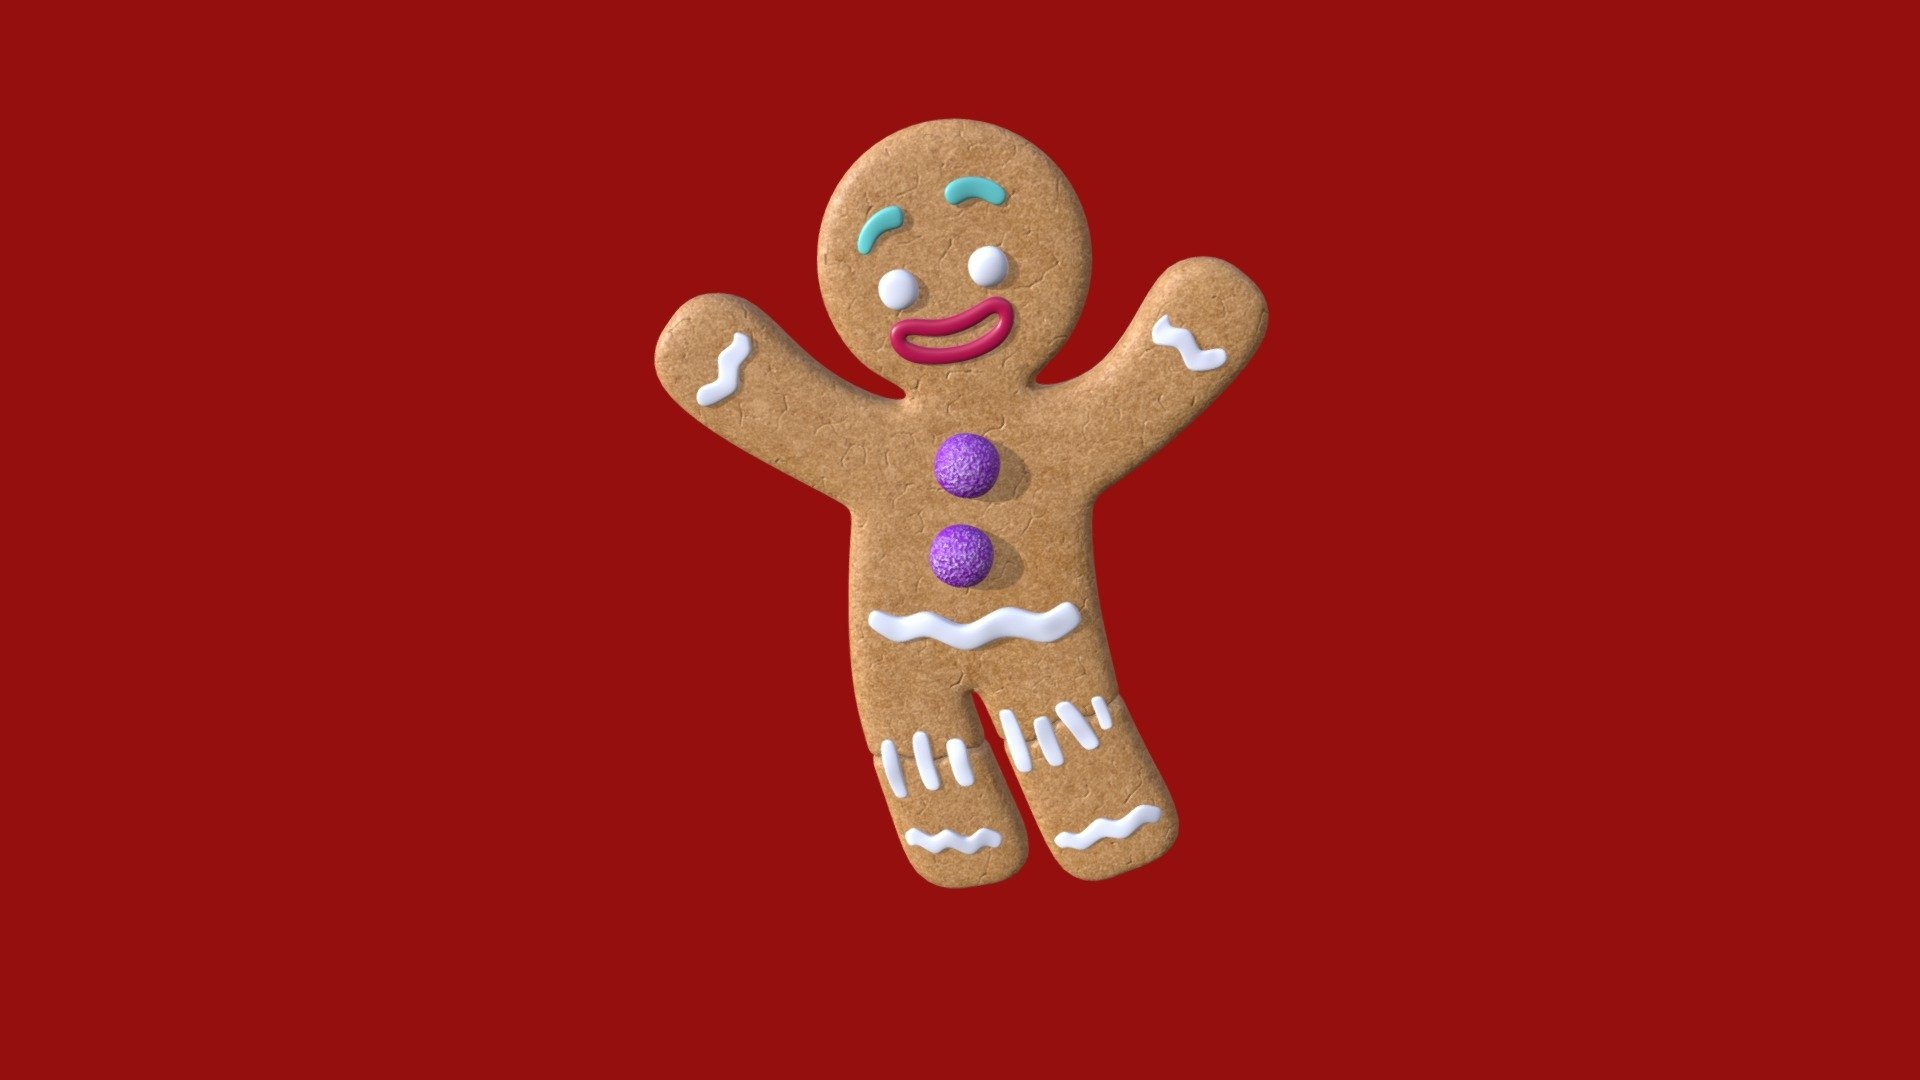 Gingerbread Man, Artistic representation, Gingerbread sculpting, Edible artwork, 1920x1080 Full HD Desktop